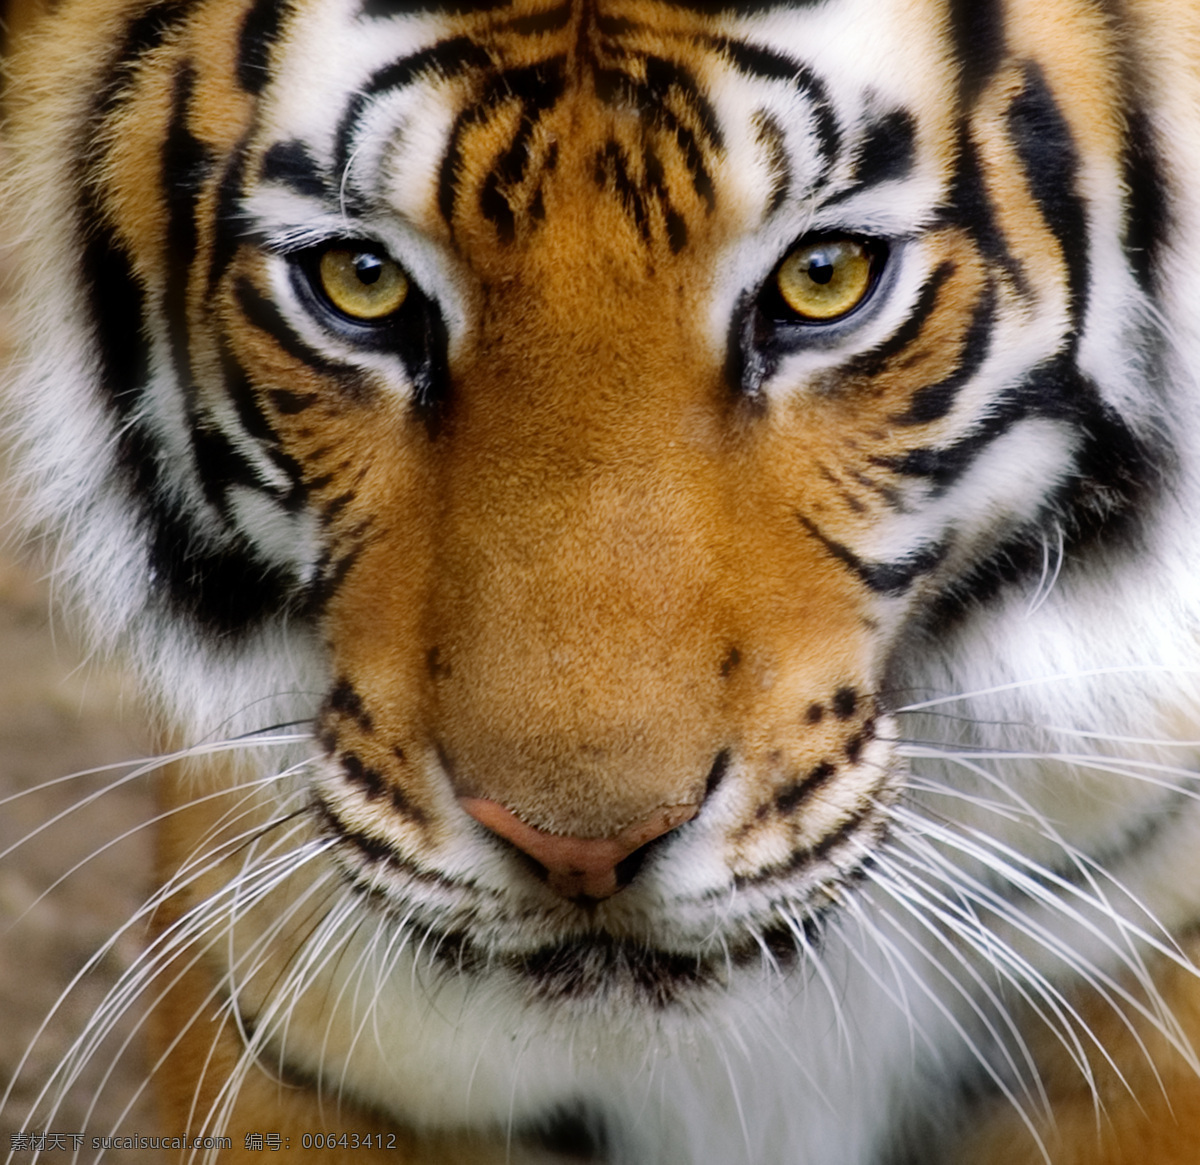 华南虎 吊睛白额虎 老虎 动物 眼神 凶猛 野生动物 生物世界